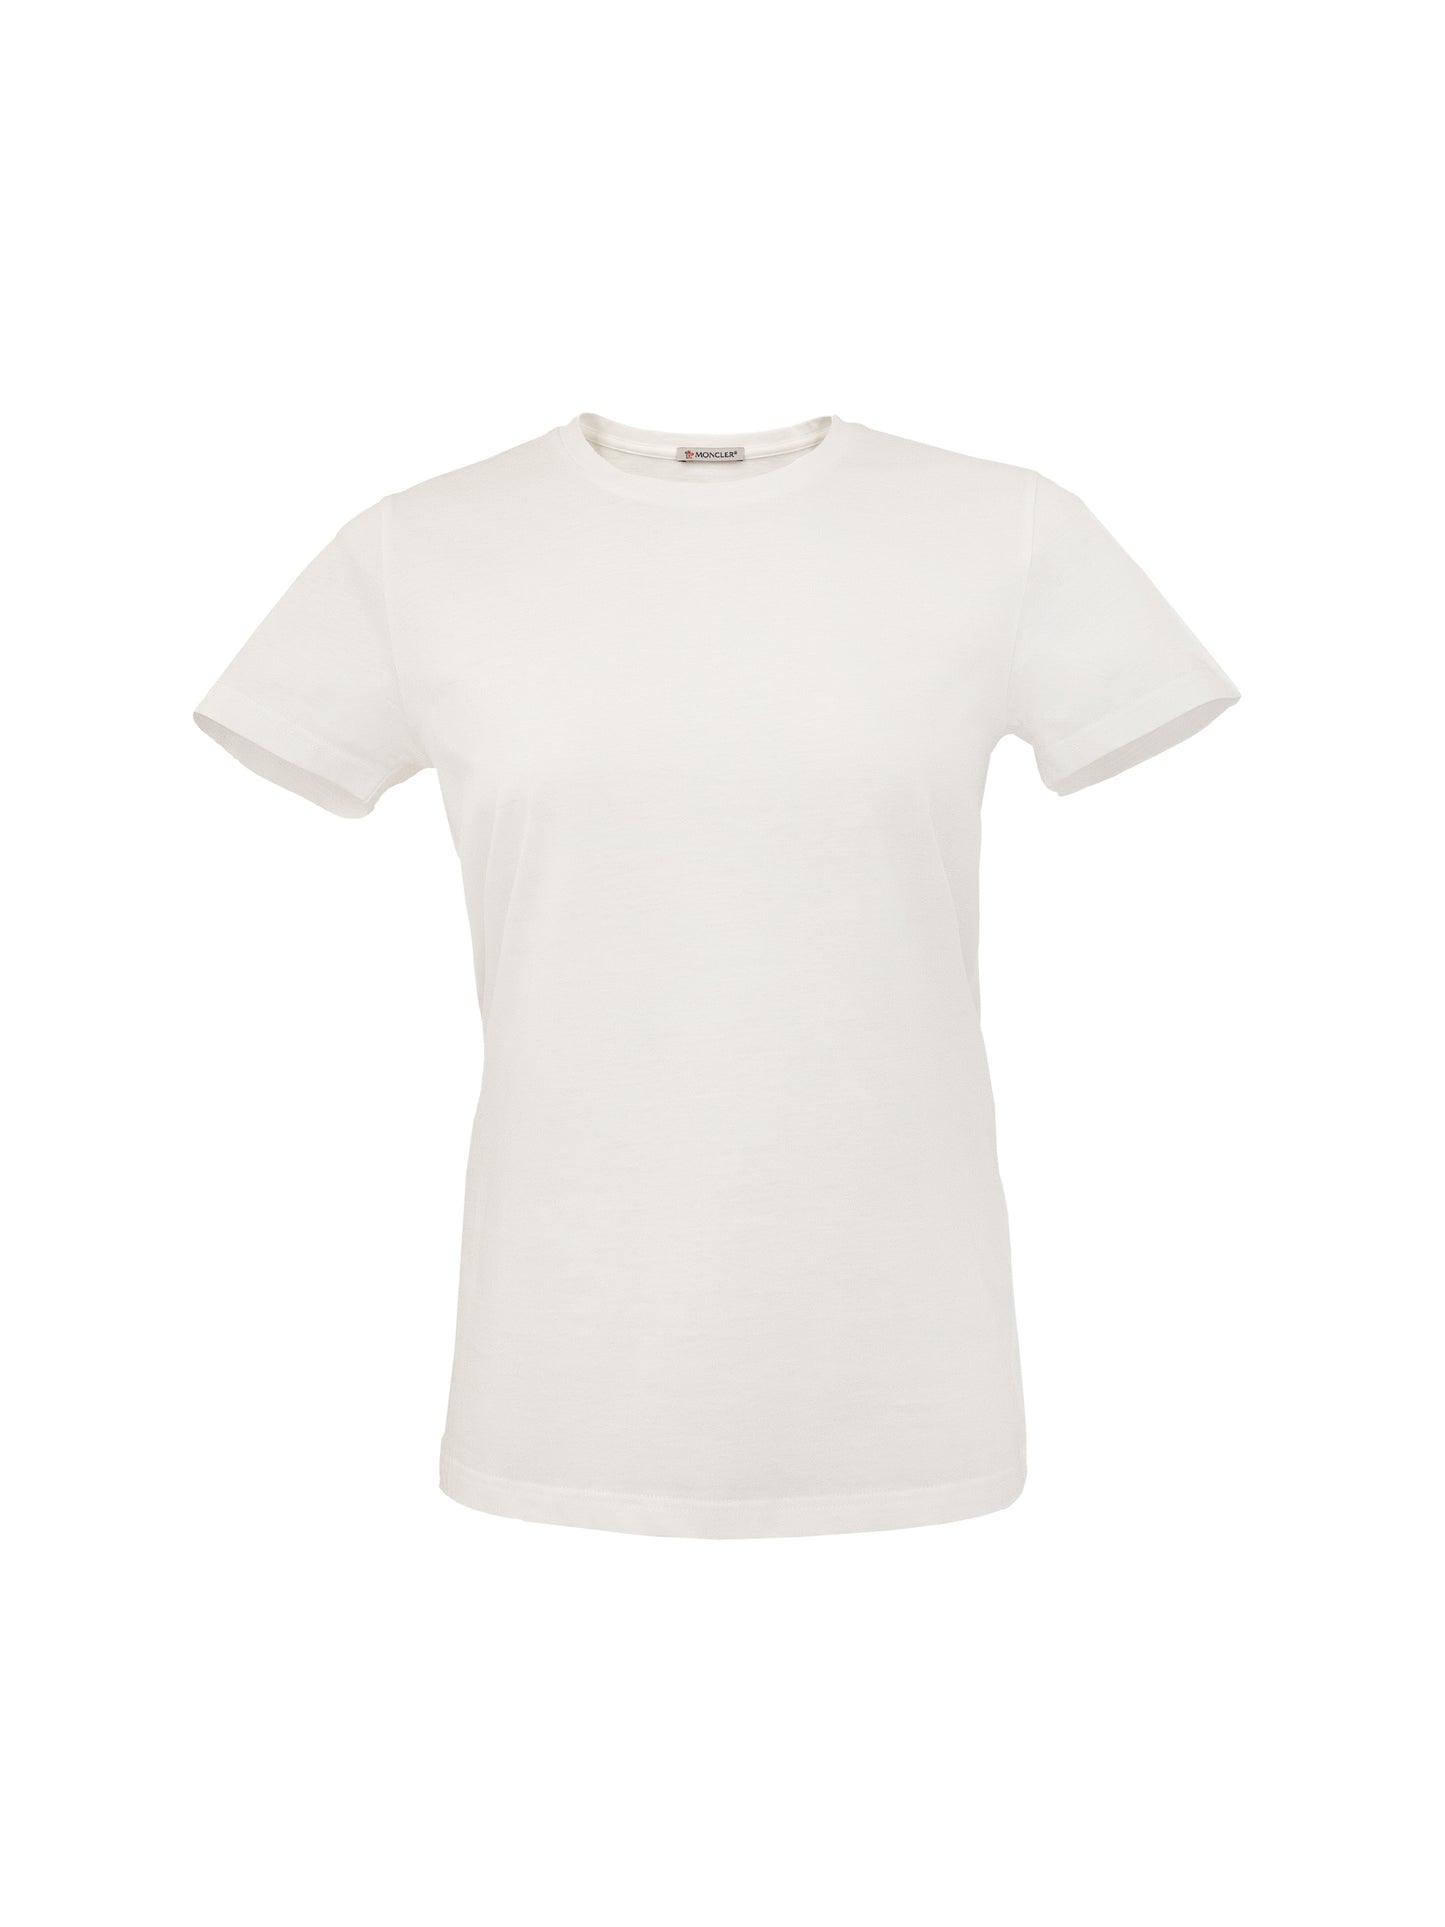 Moncler T-Shirt Weiss